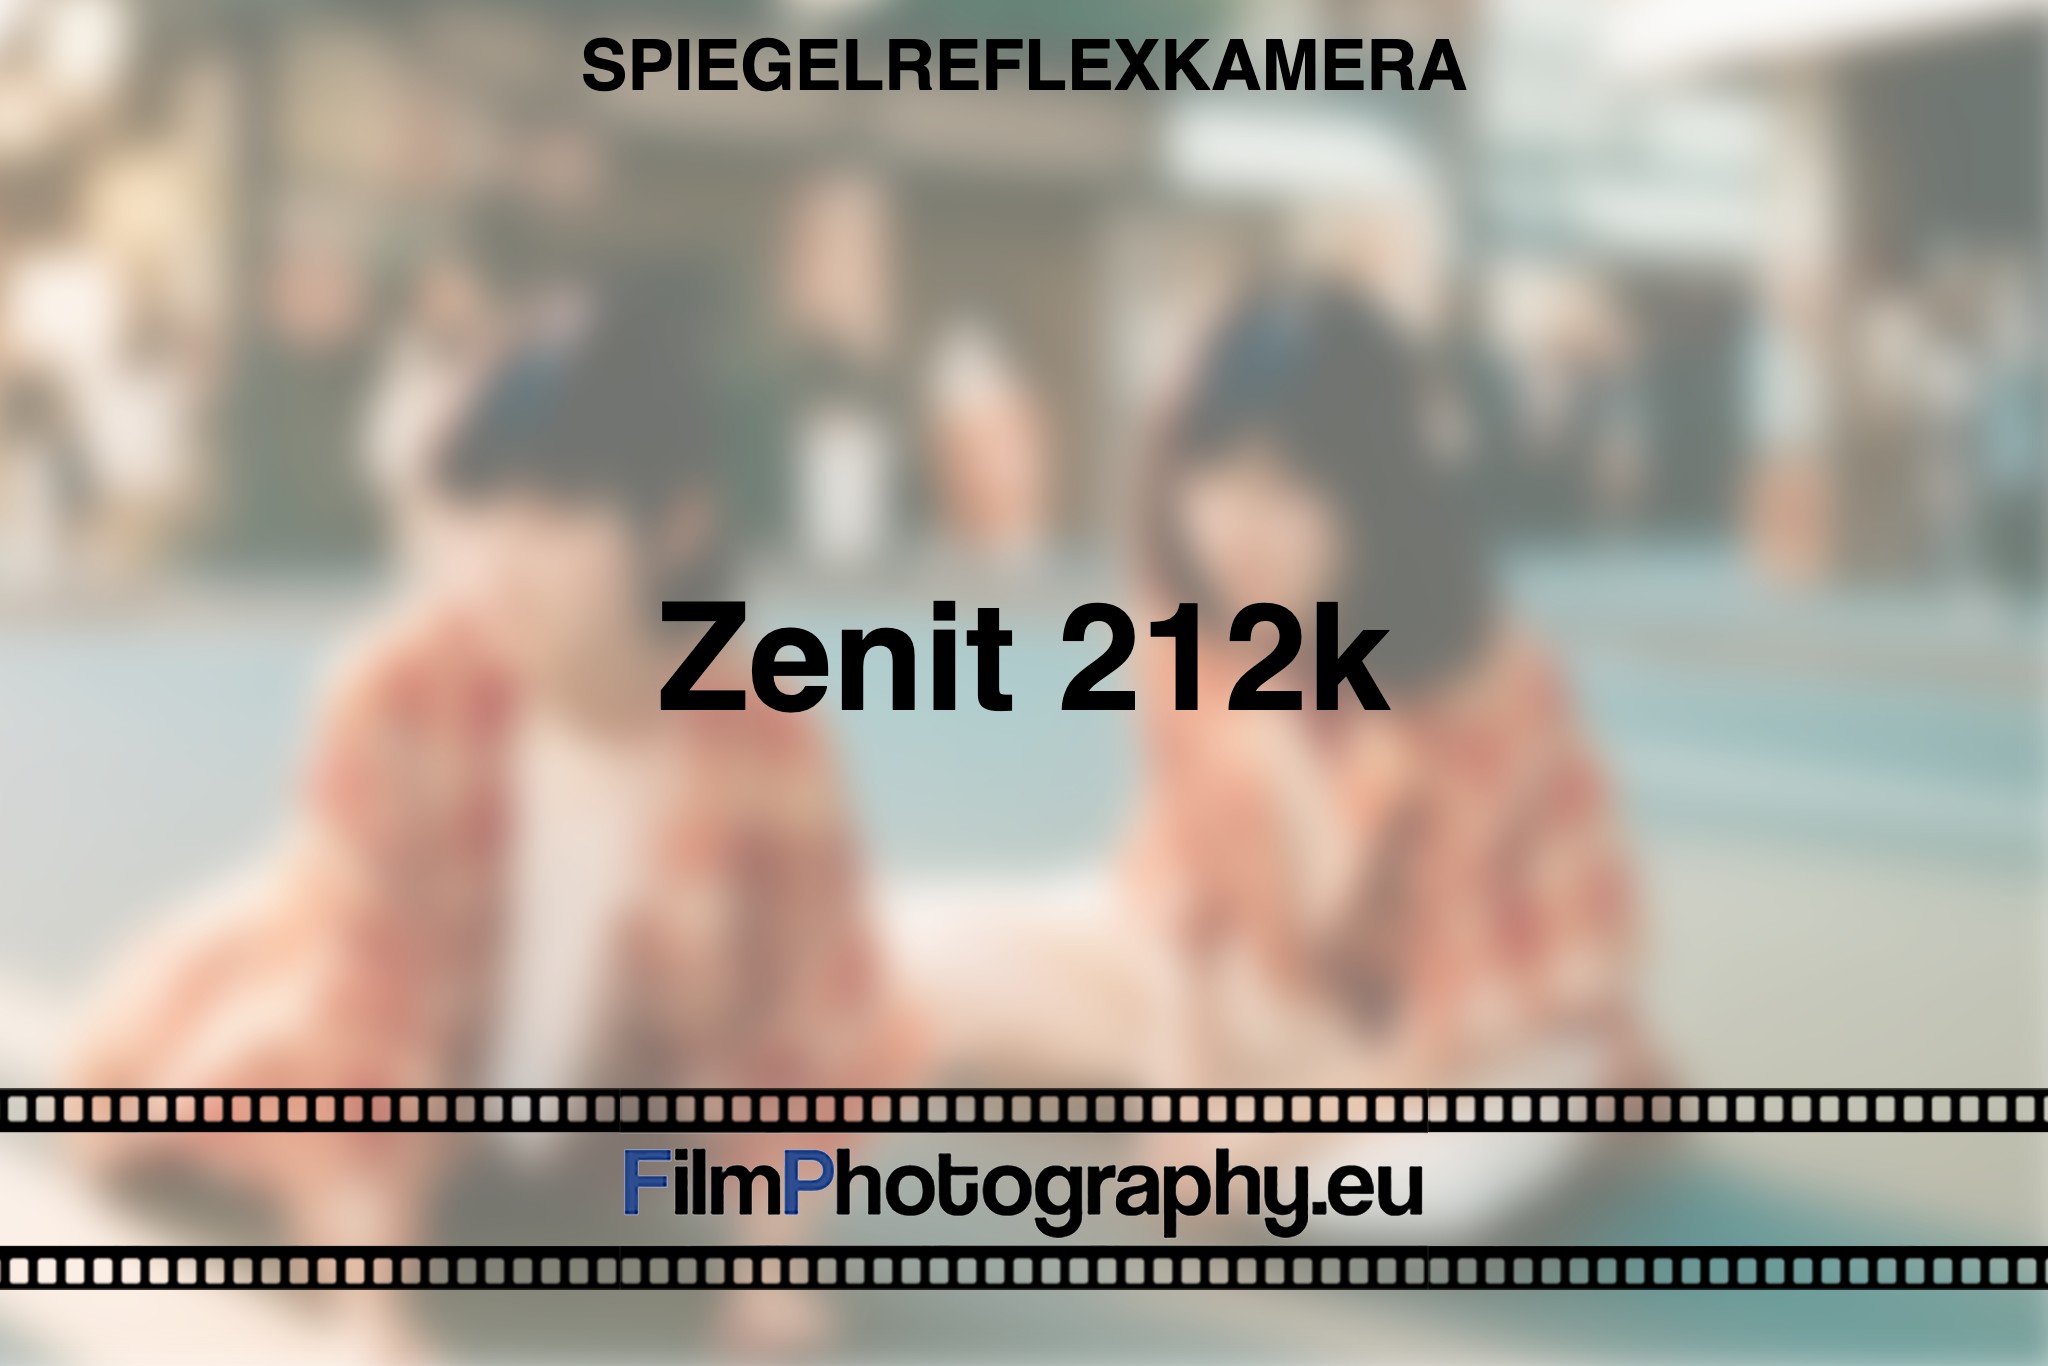 zenit-212k-spiegelreflexkamera-bnv